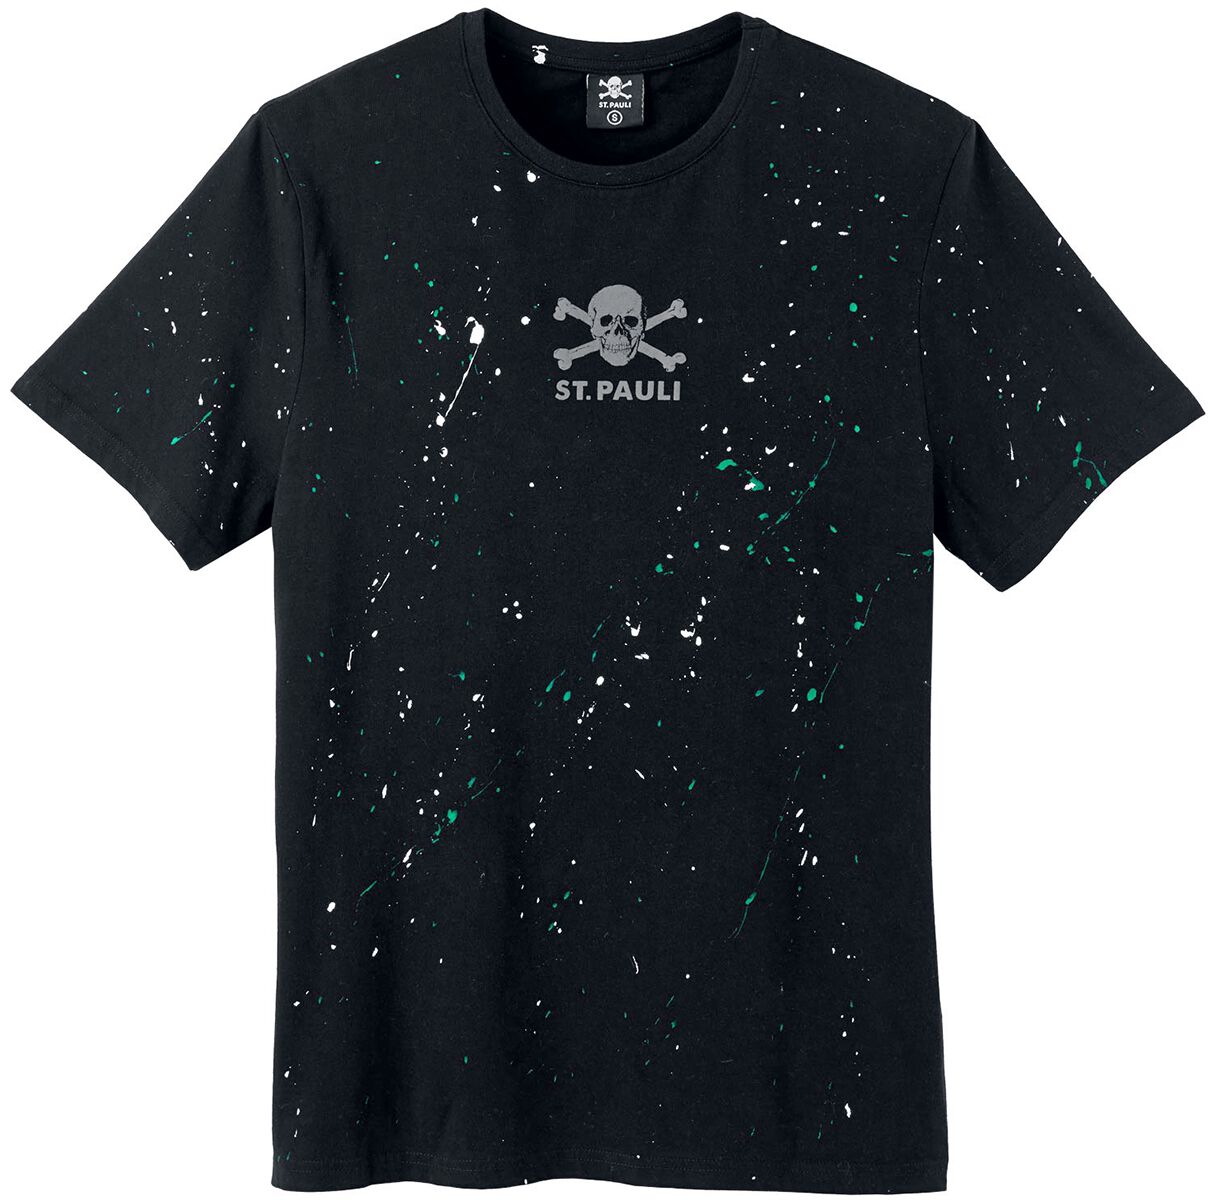 Nuevo Camiseta Pauli Barata | Compra Online Precios Super Baratos